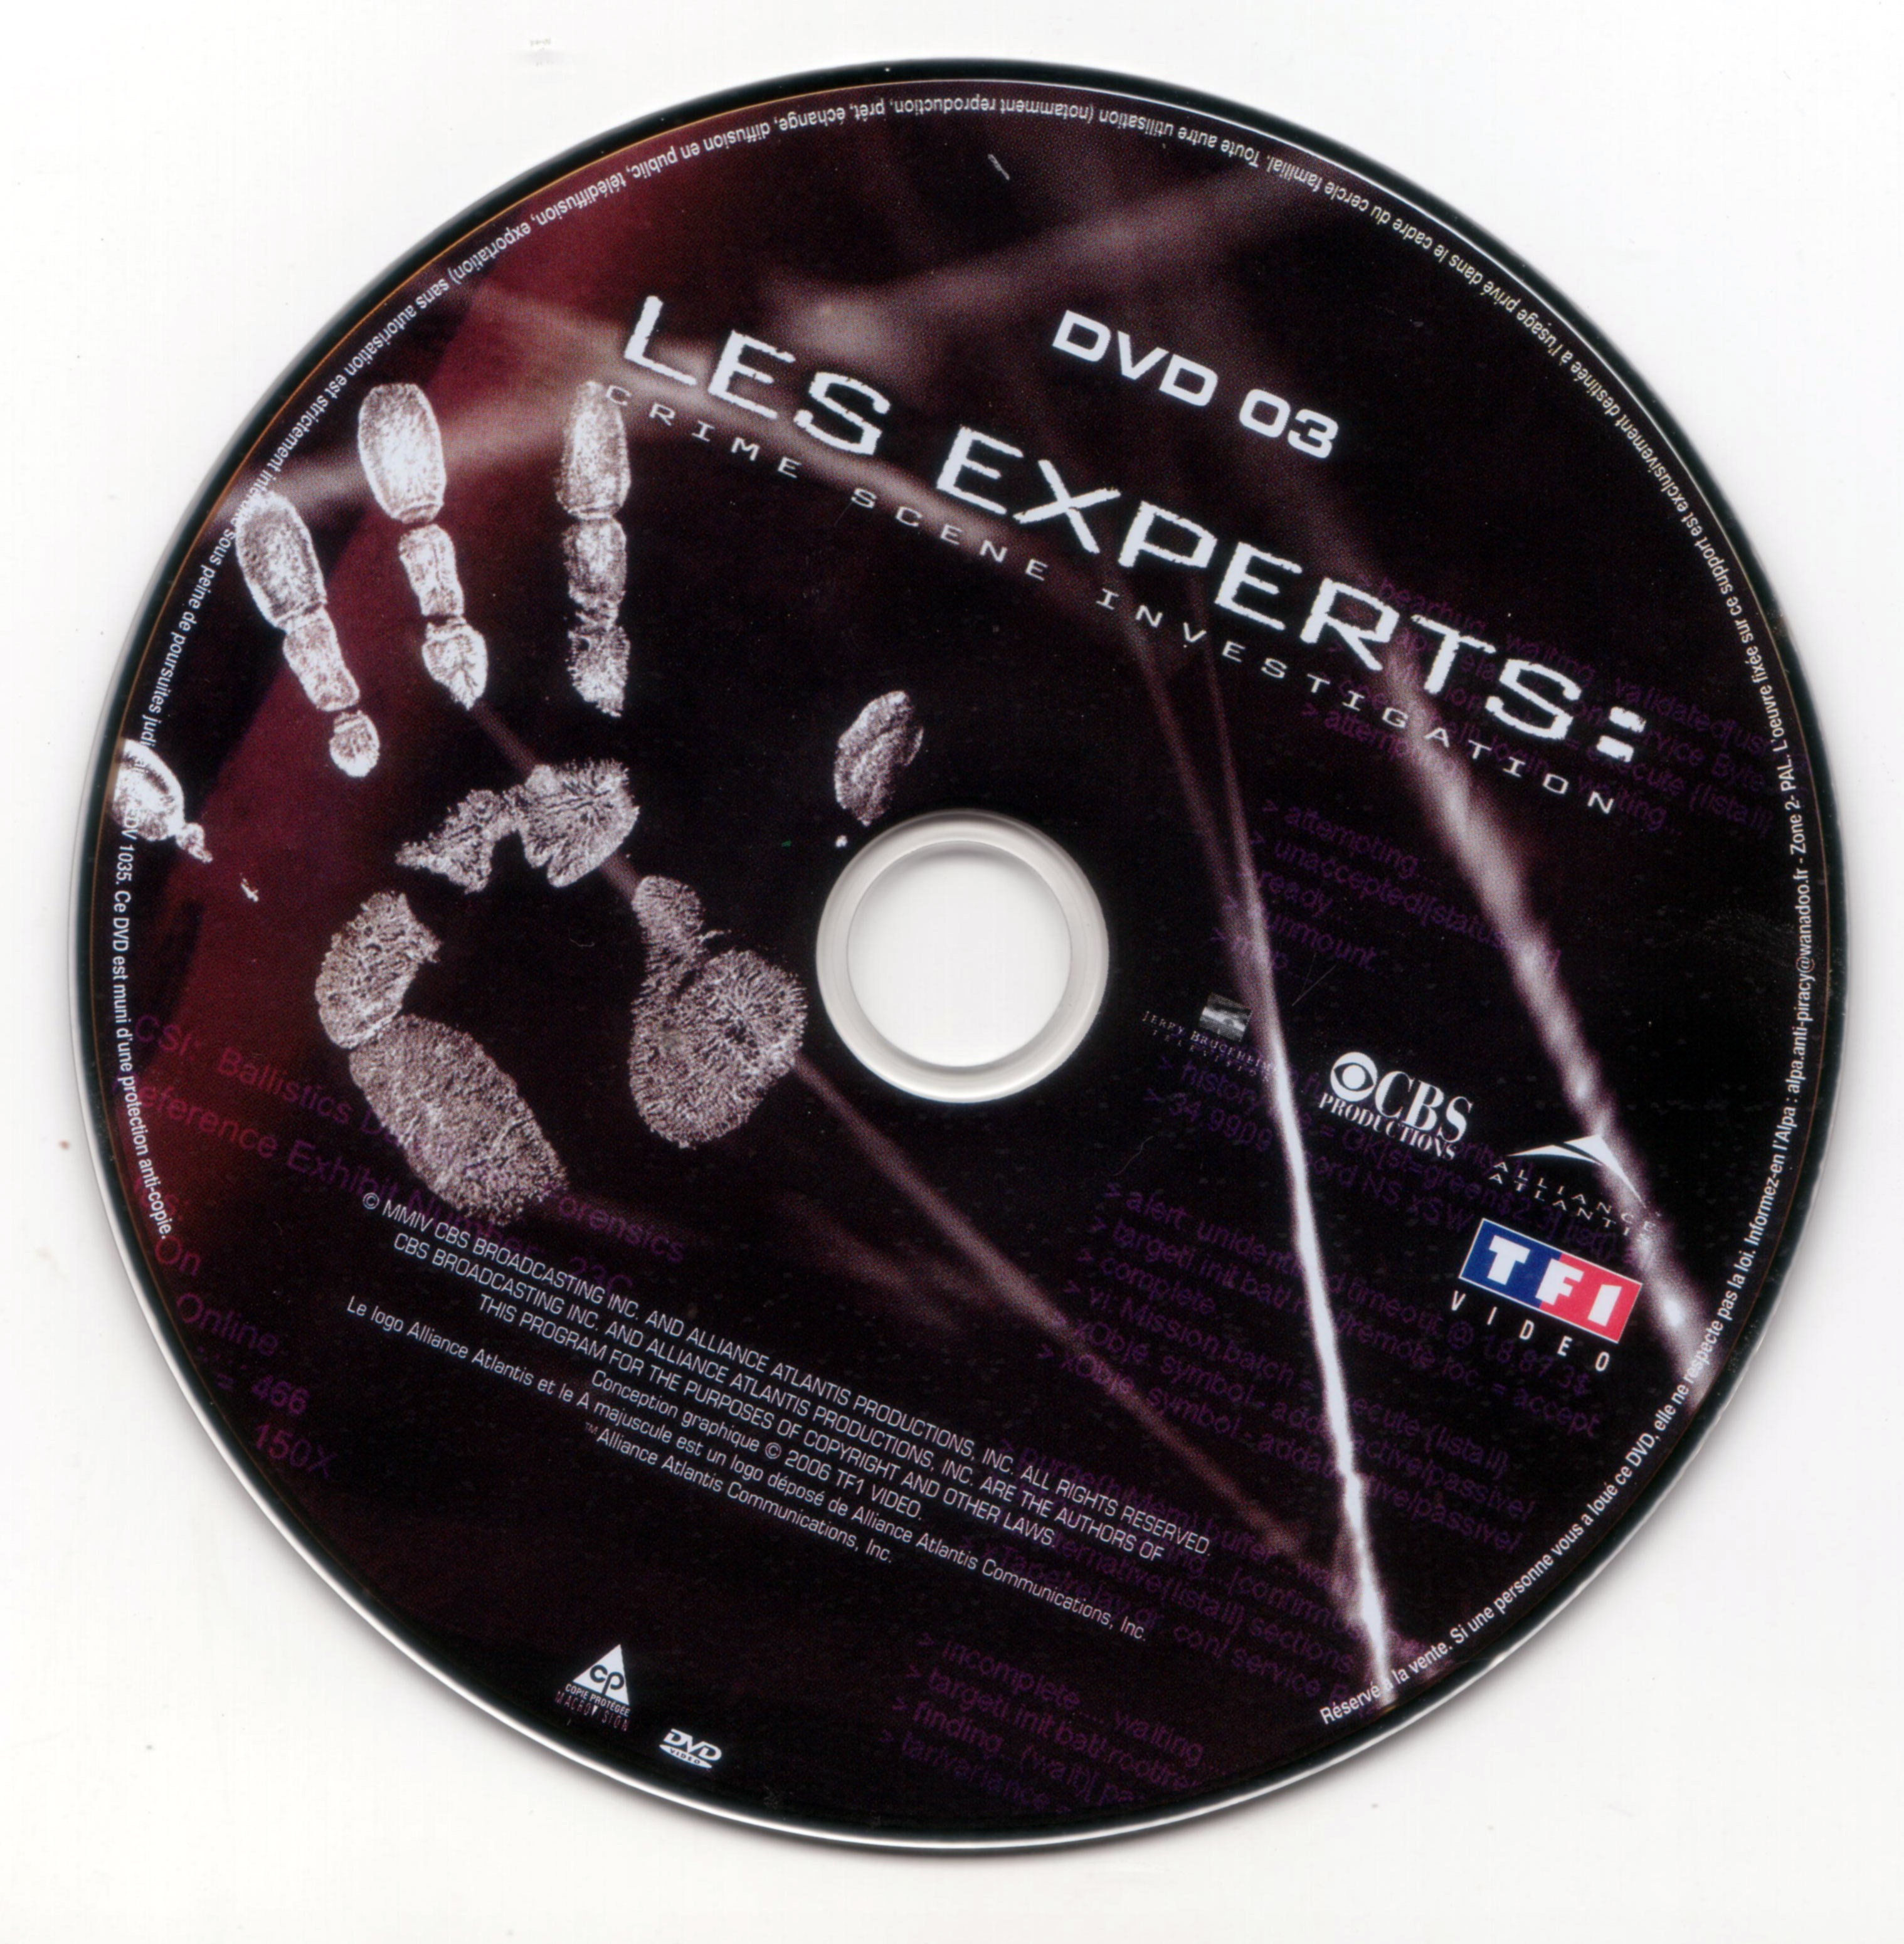 Les experts Saison 4 vol 2 DISC 3